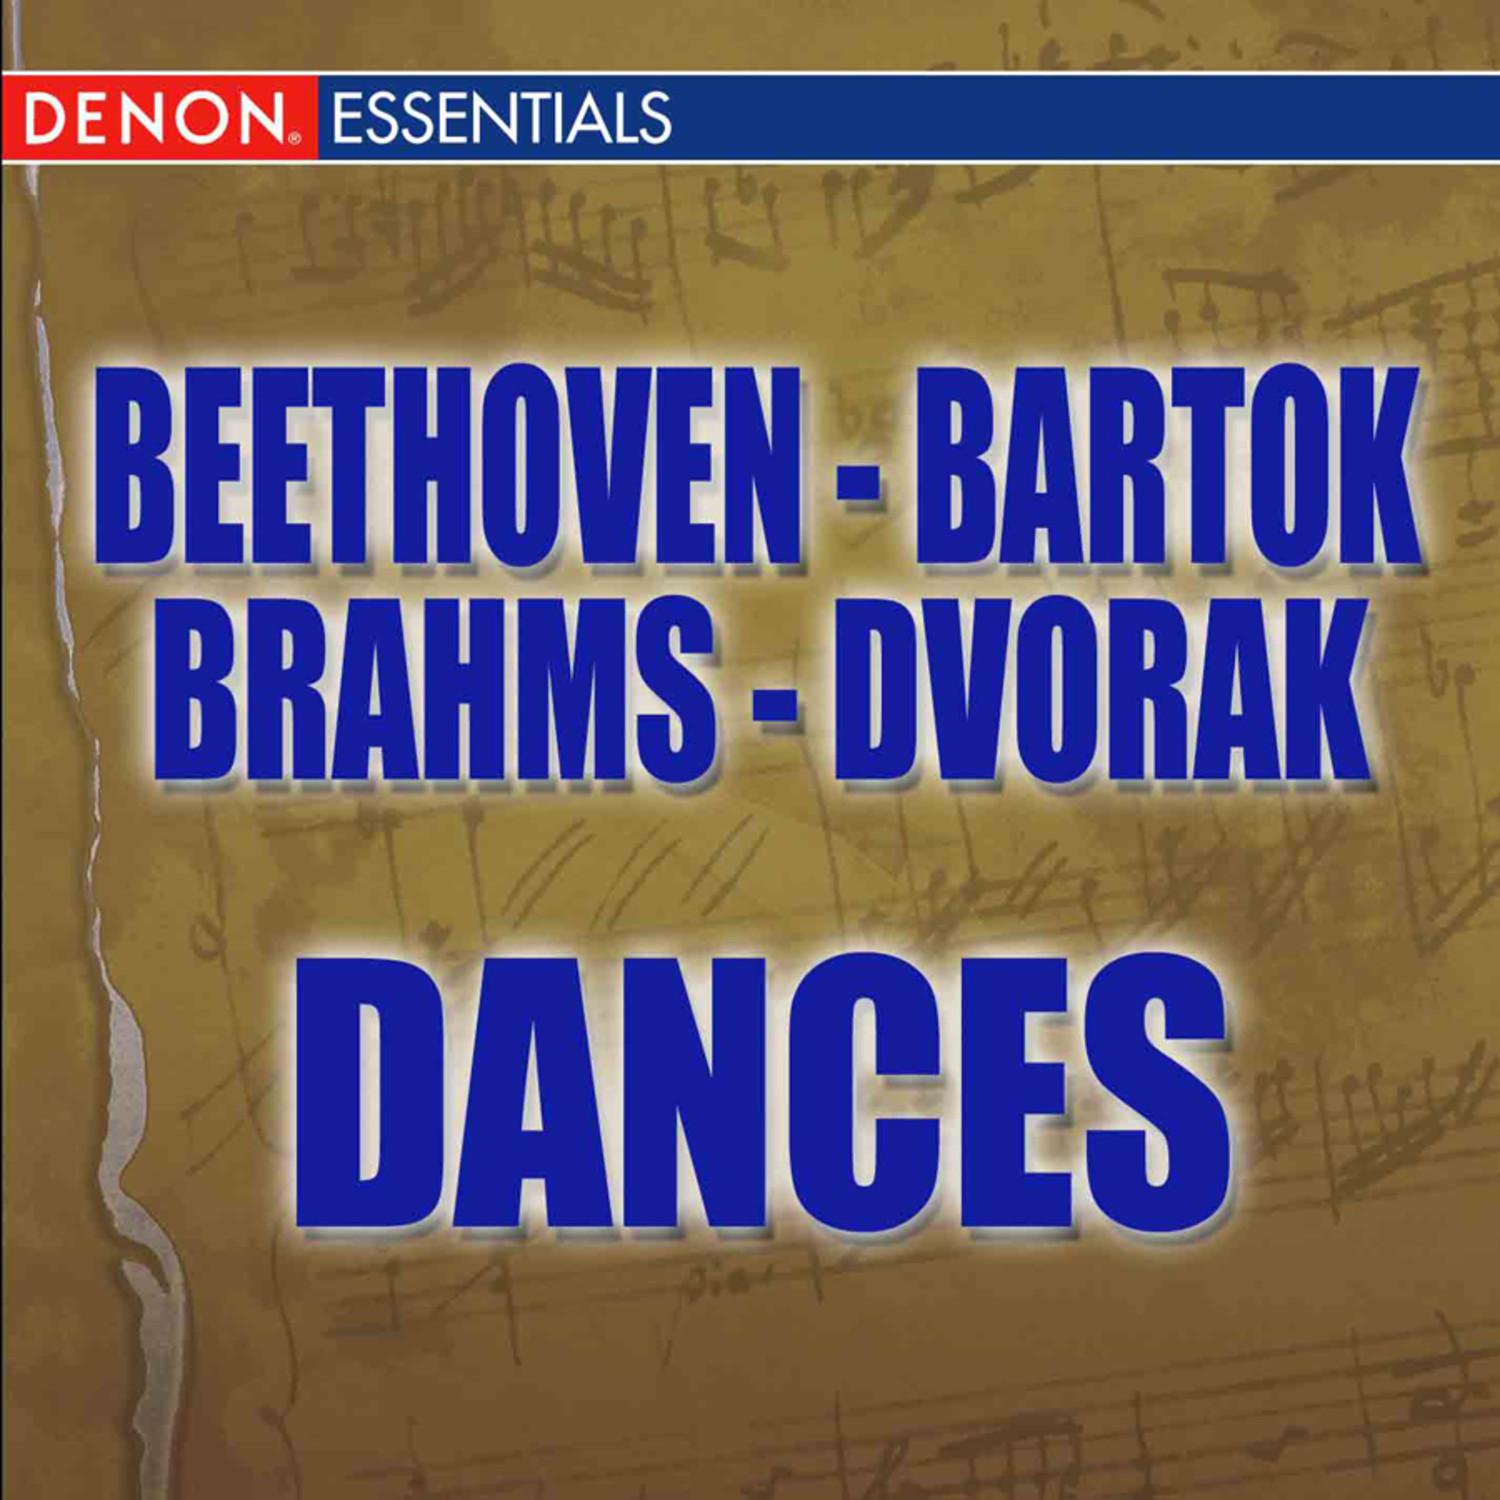 Beethoven: 12 Contredanses - Brahms: Hungarian Dances - Dvorák: Slavonic Dances - Bartók: Romanian Folk Dances